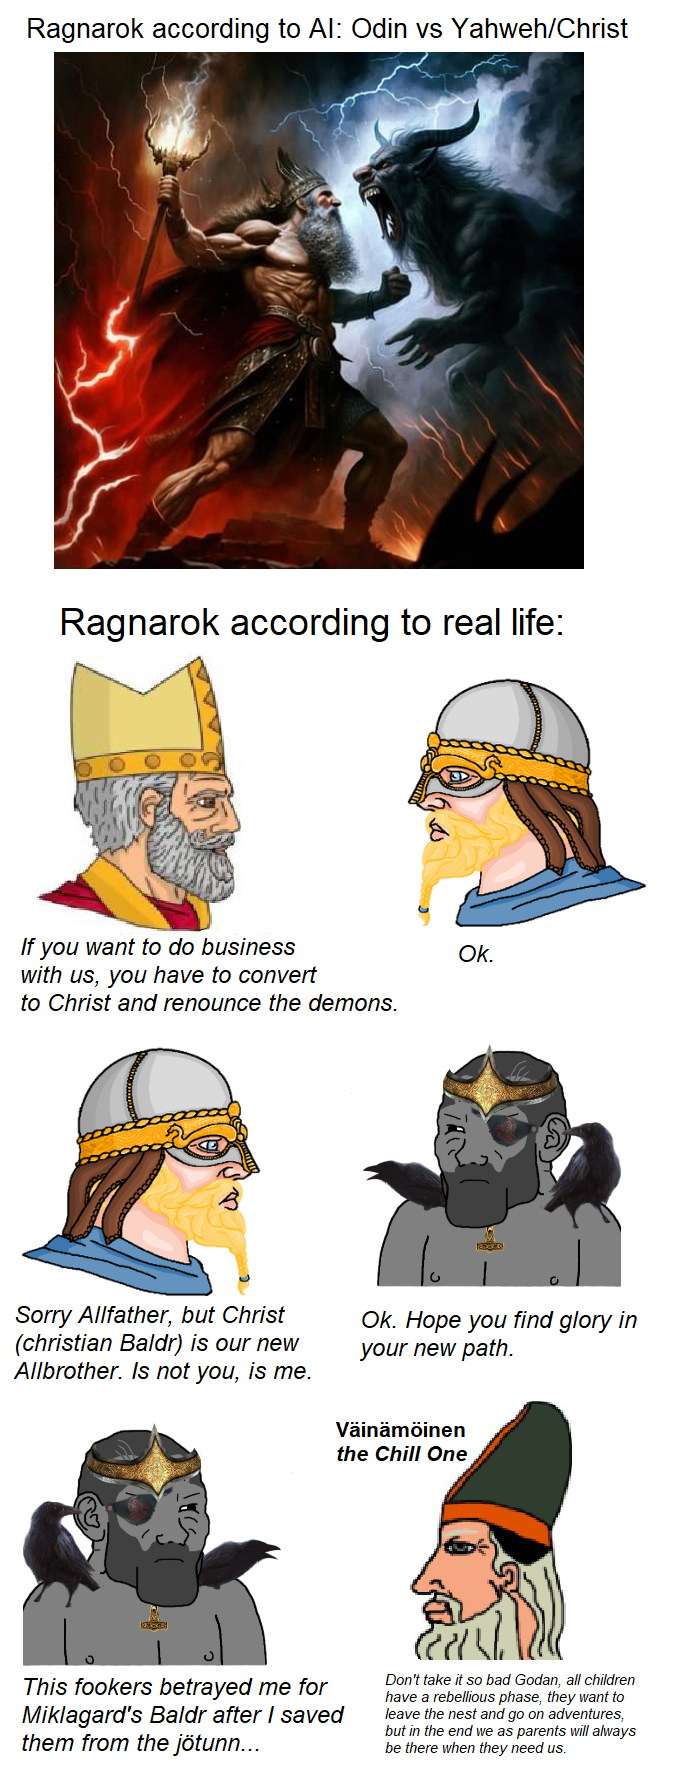 Ragnarok was epic in the Sagas